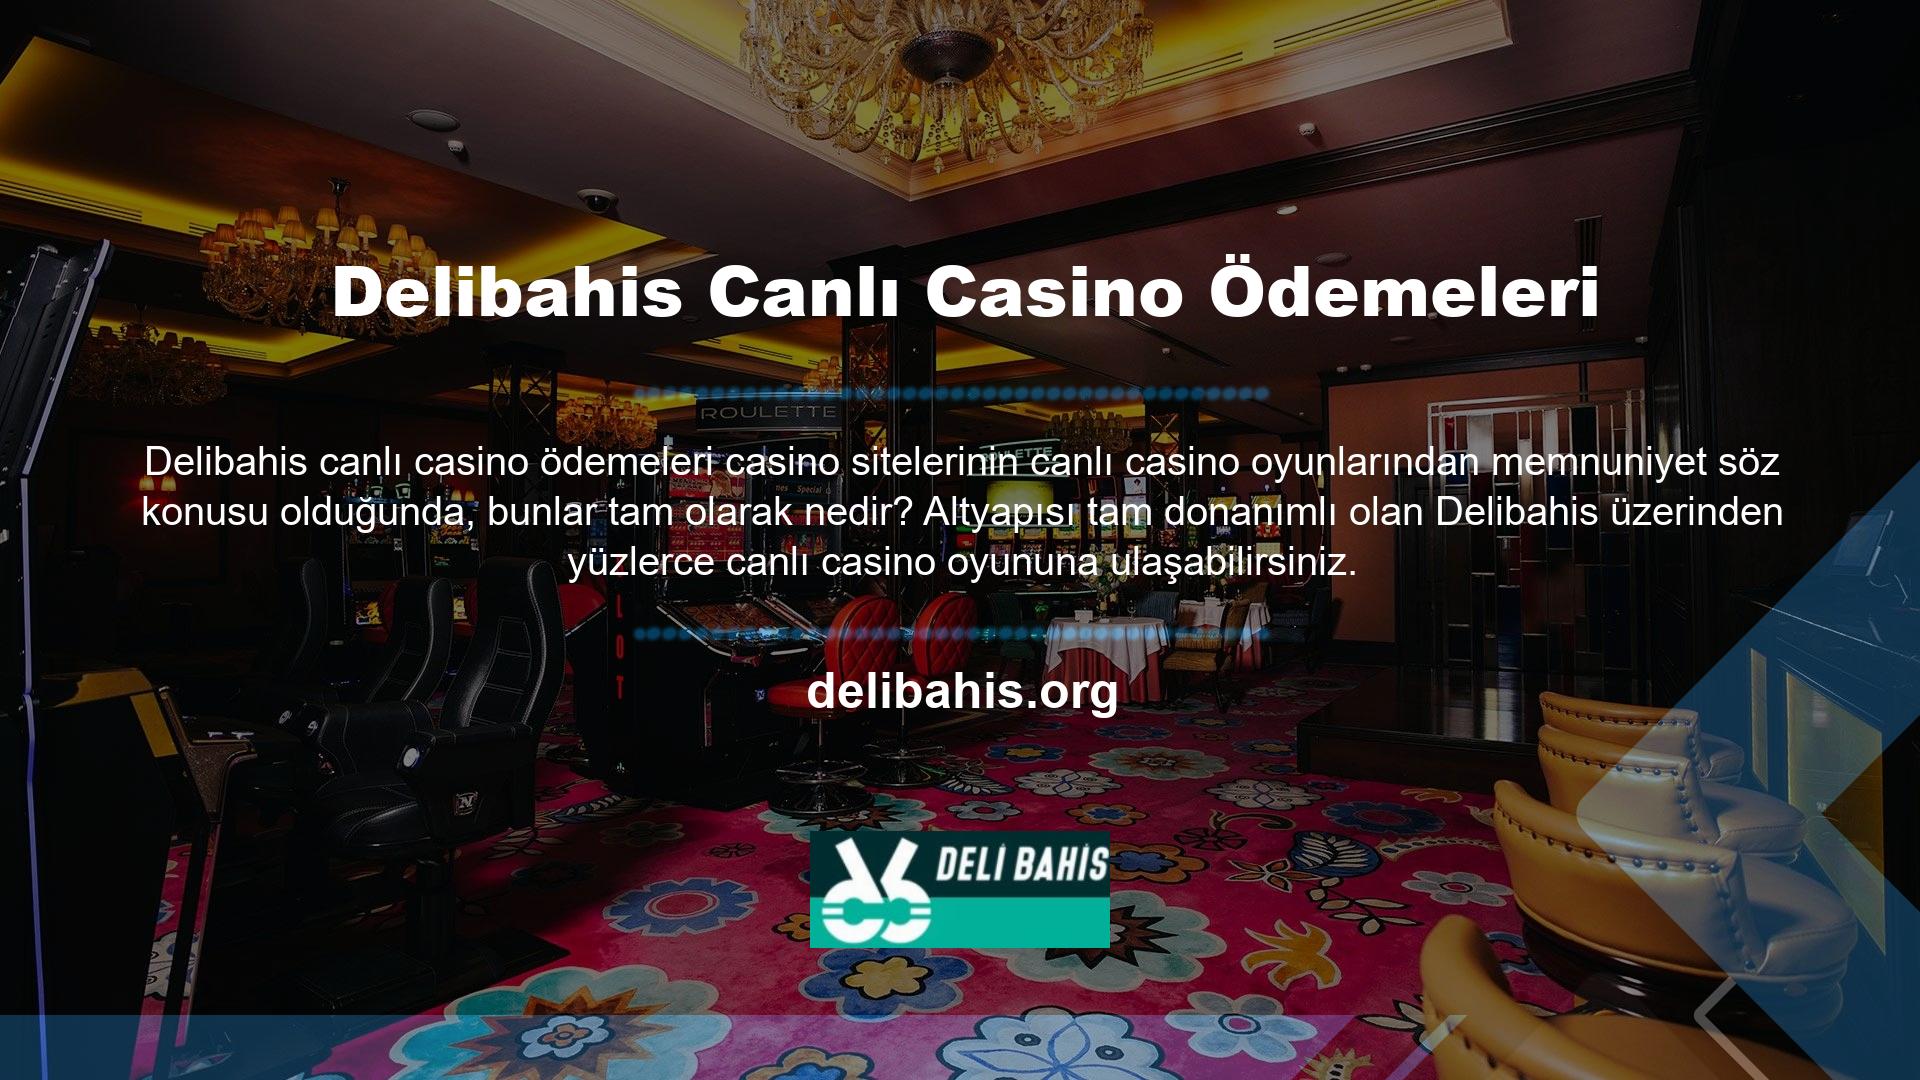 Oyun çeşitliliği ve hizmet altyapısı, Delibahis Canlı Casino'nun özellikleridir ve bu da onu en iyi seçim haline getirir